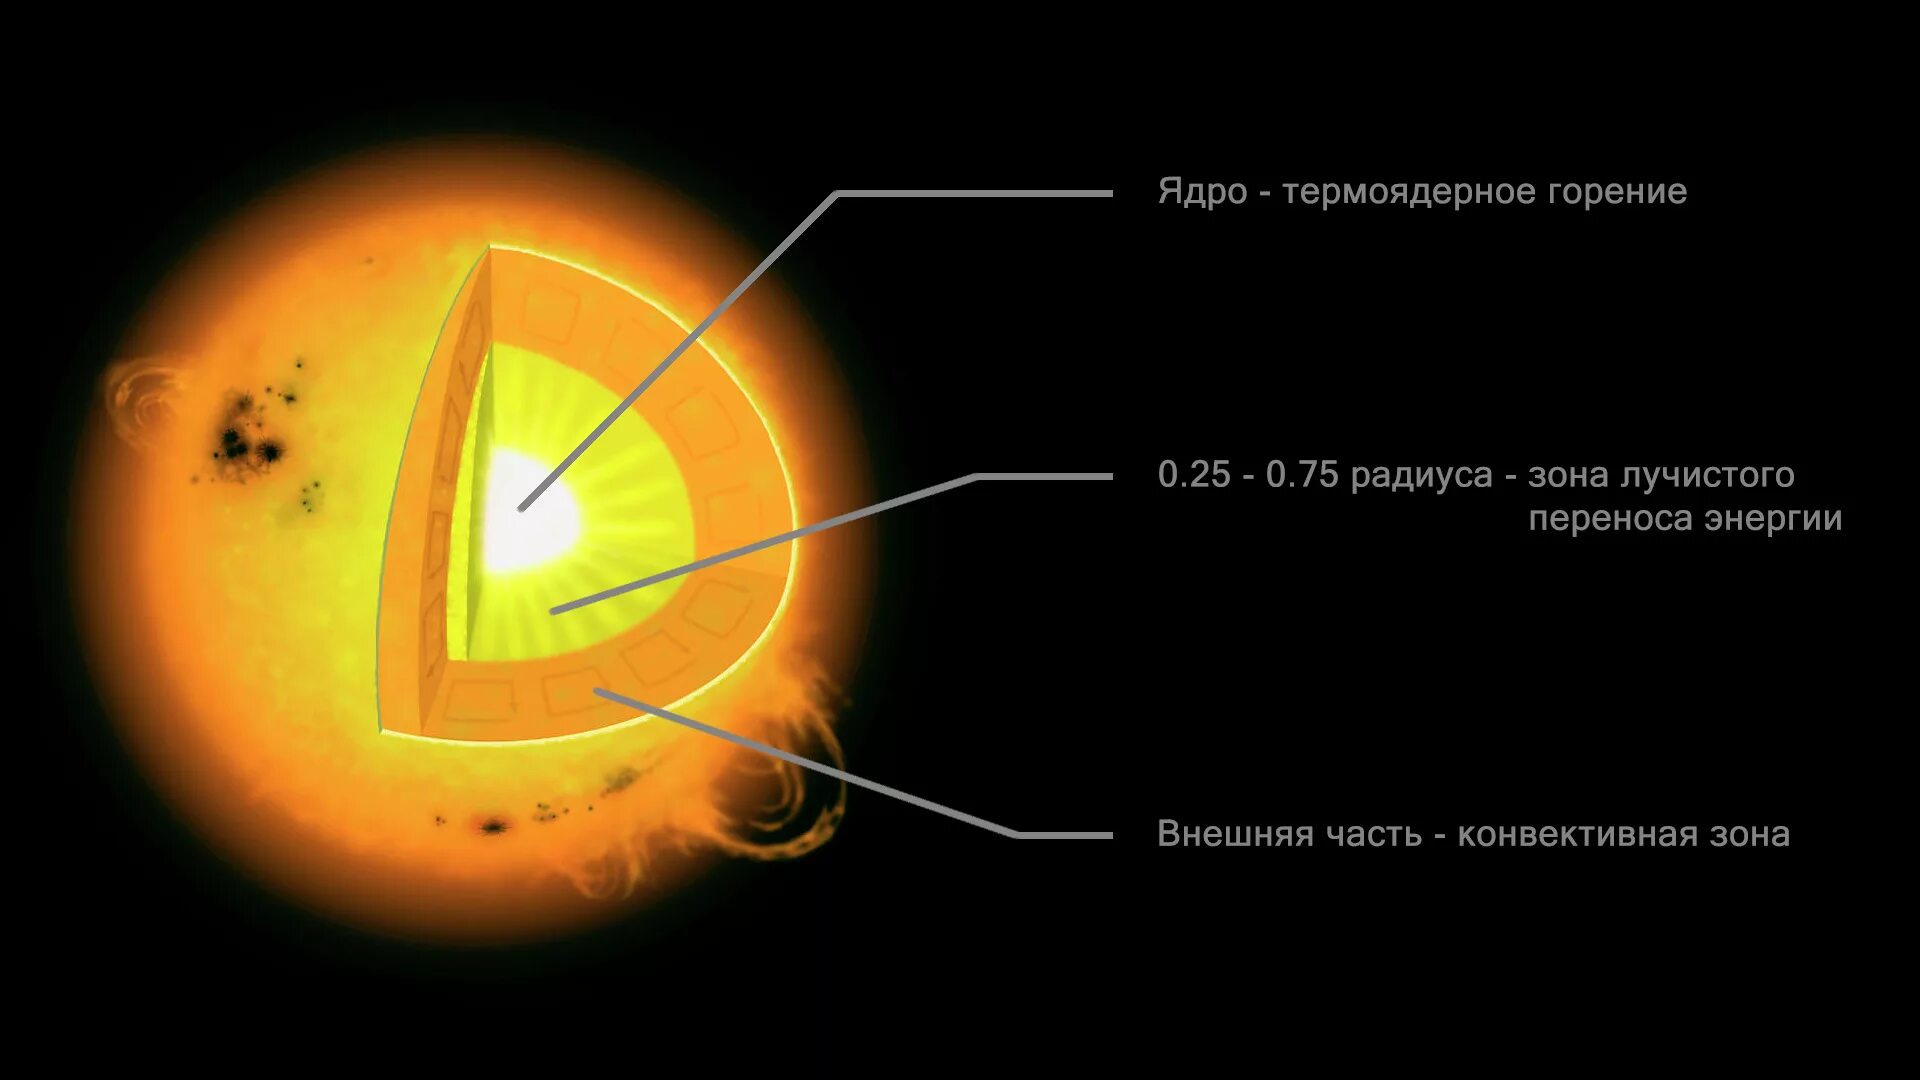 Строение звезды солнца. Внутренне строение солнца ядро. Ядро зона лучистого переноса конвективная зона. Зона лучистого переноса солнца. Строение солнца конвективная зона.